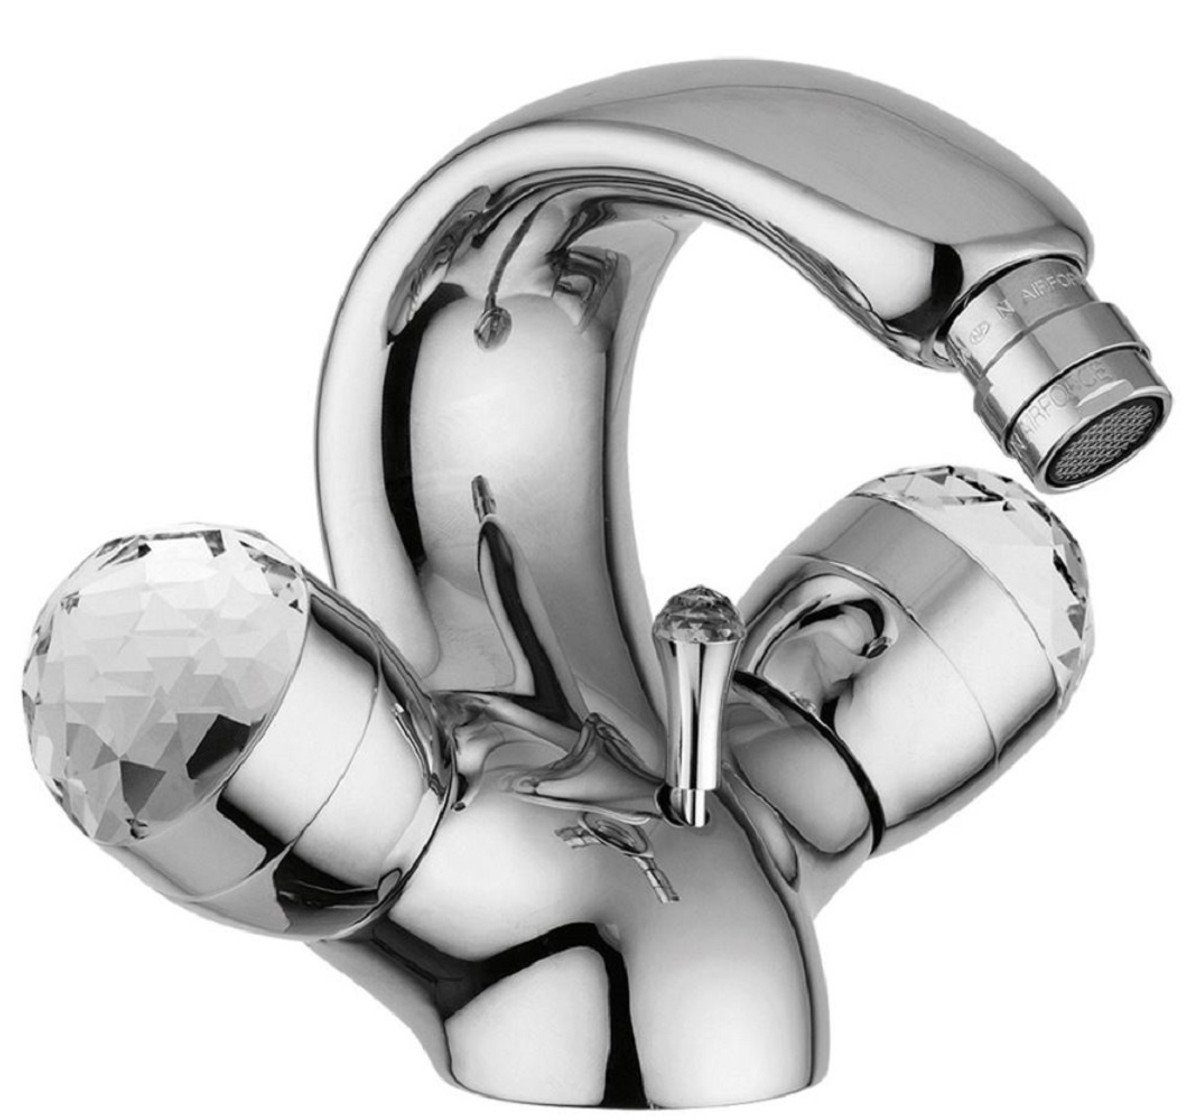 Casa Padrino Waschtischarmatur Luxus Jugendstil Wasserhahn mit Swarovski Kristallglas Silber H. 15,5 cm - Retro Waschtisch Armatur - Einlochbatterie - Erstklassische Qualität - Made in Italy